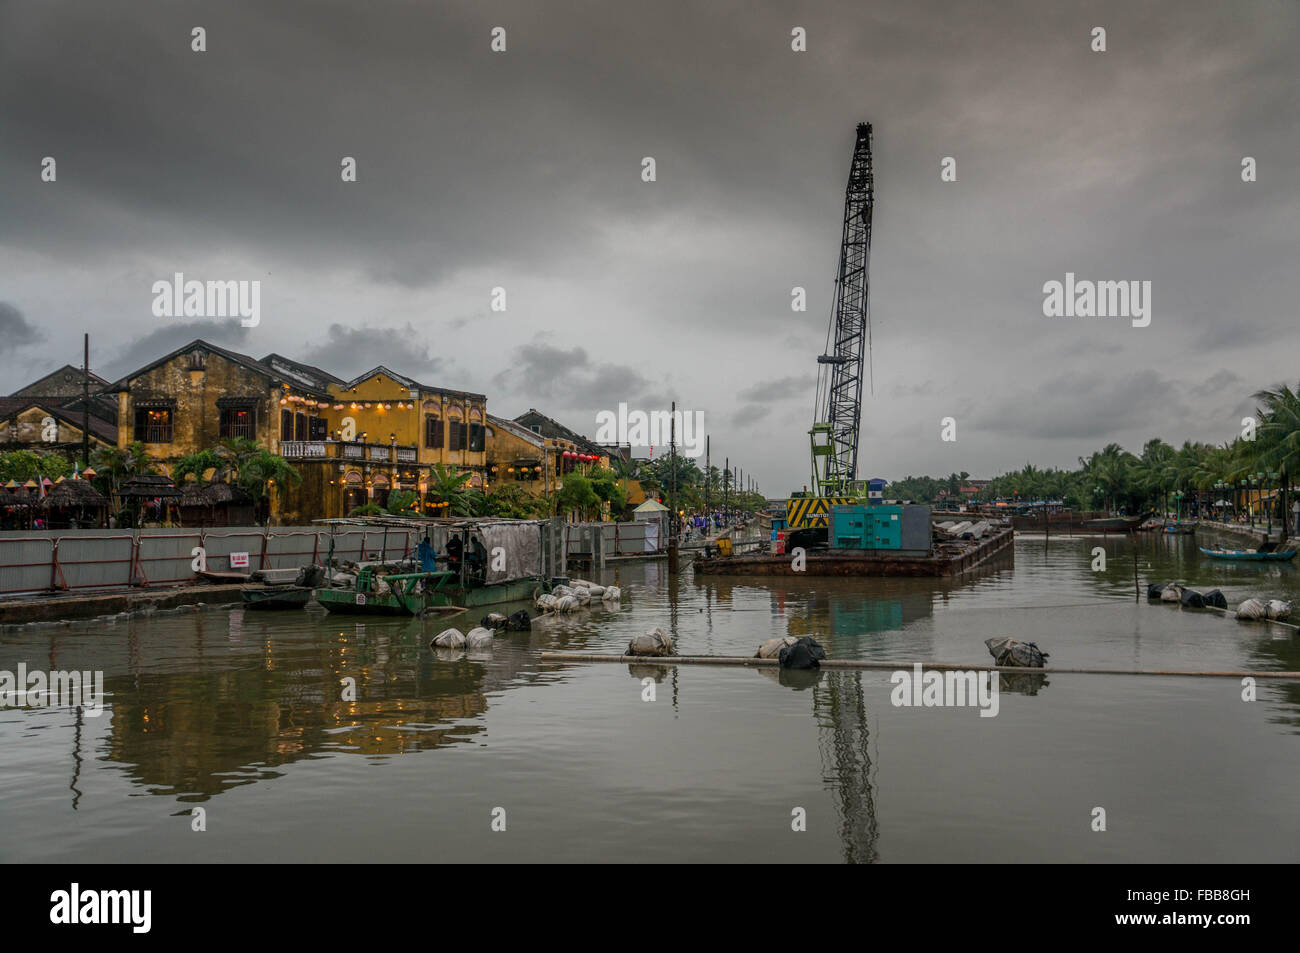 Il fascino industriale vicino alla antica città di Hoi An, Vietnam. Cielo drammatico e riflessi nel fiume. Foto Stock